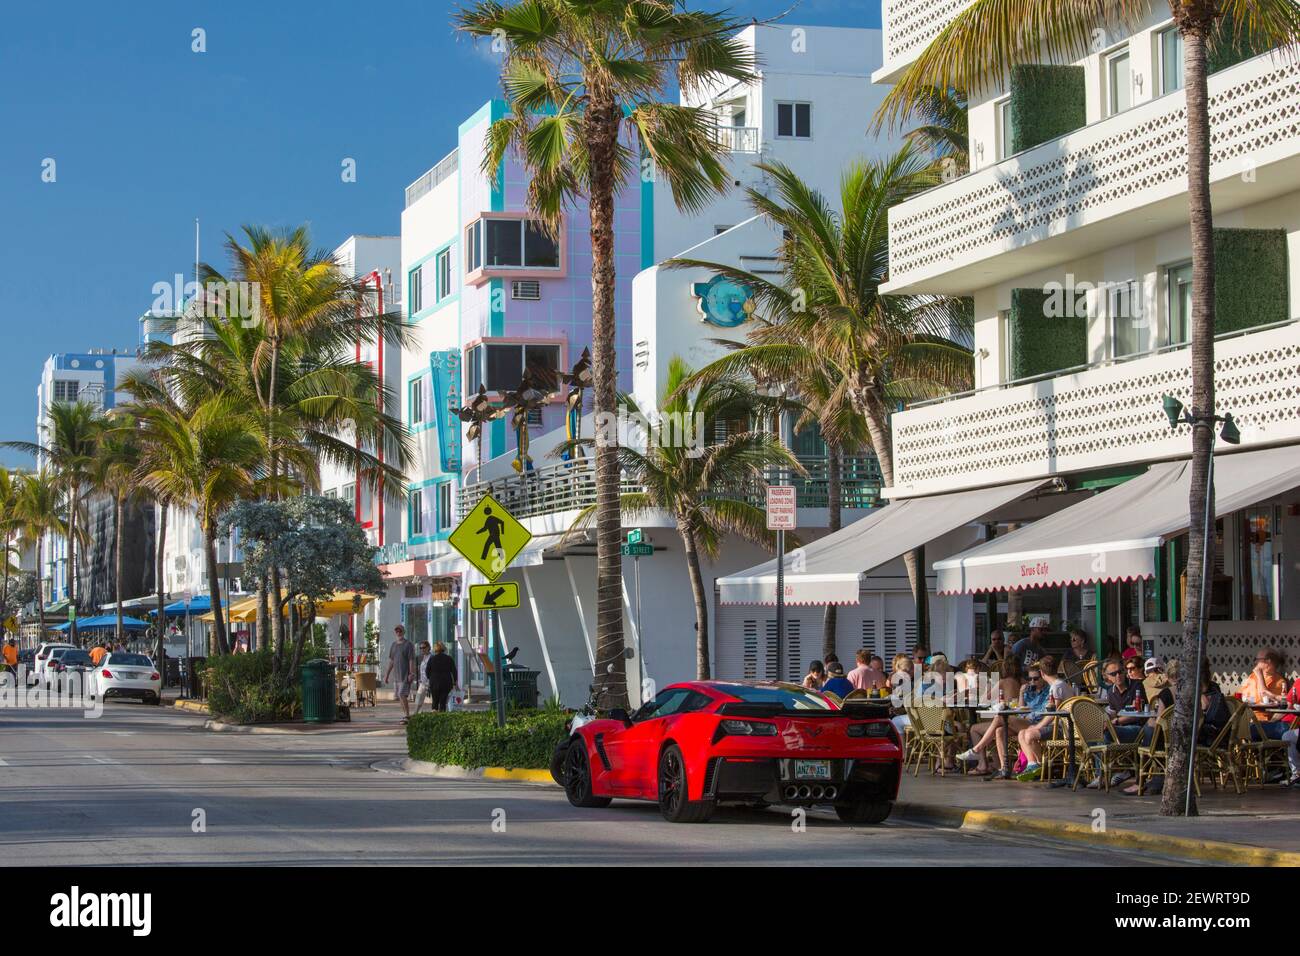 Vue sur Ocean Drive, Red Chevrolet Corvette proéminent, quartier historique art déco, South Beach, Miami Beach, Floride, États-Unis d'Amérique Banque D'Images